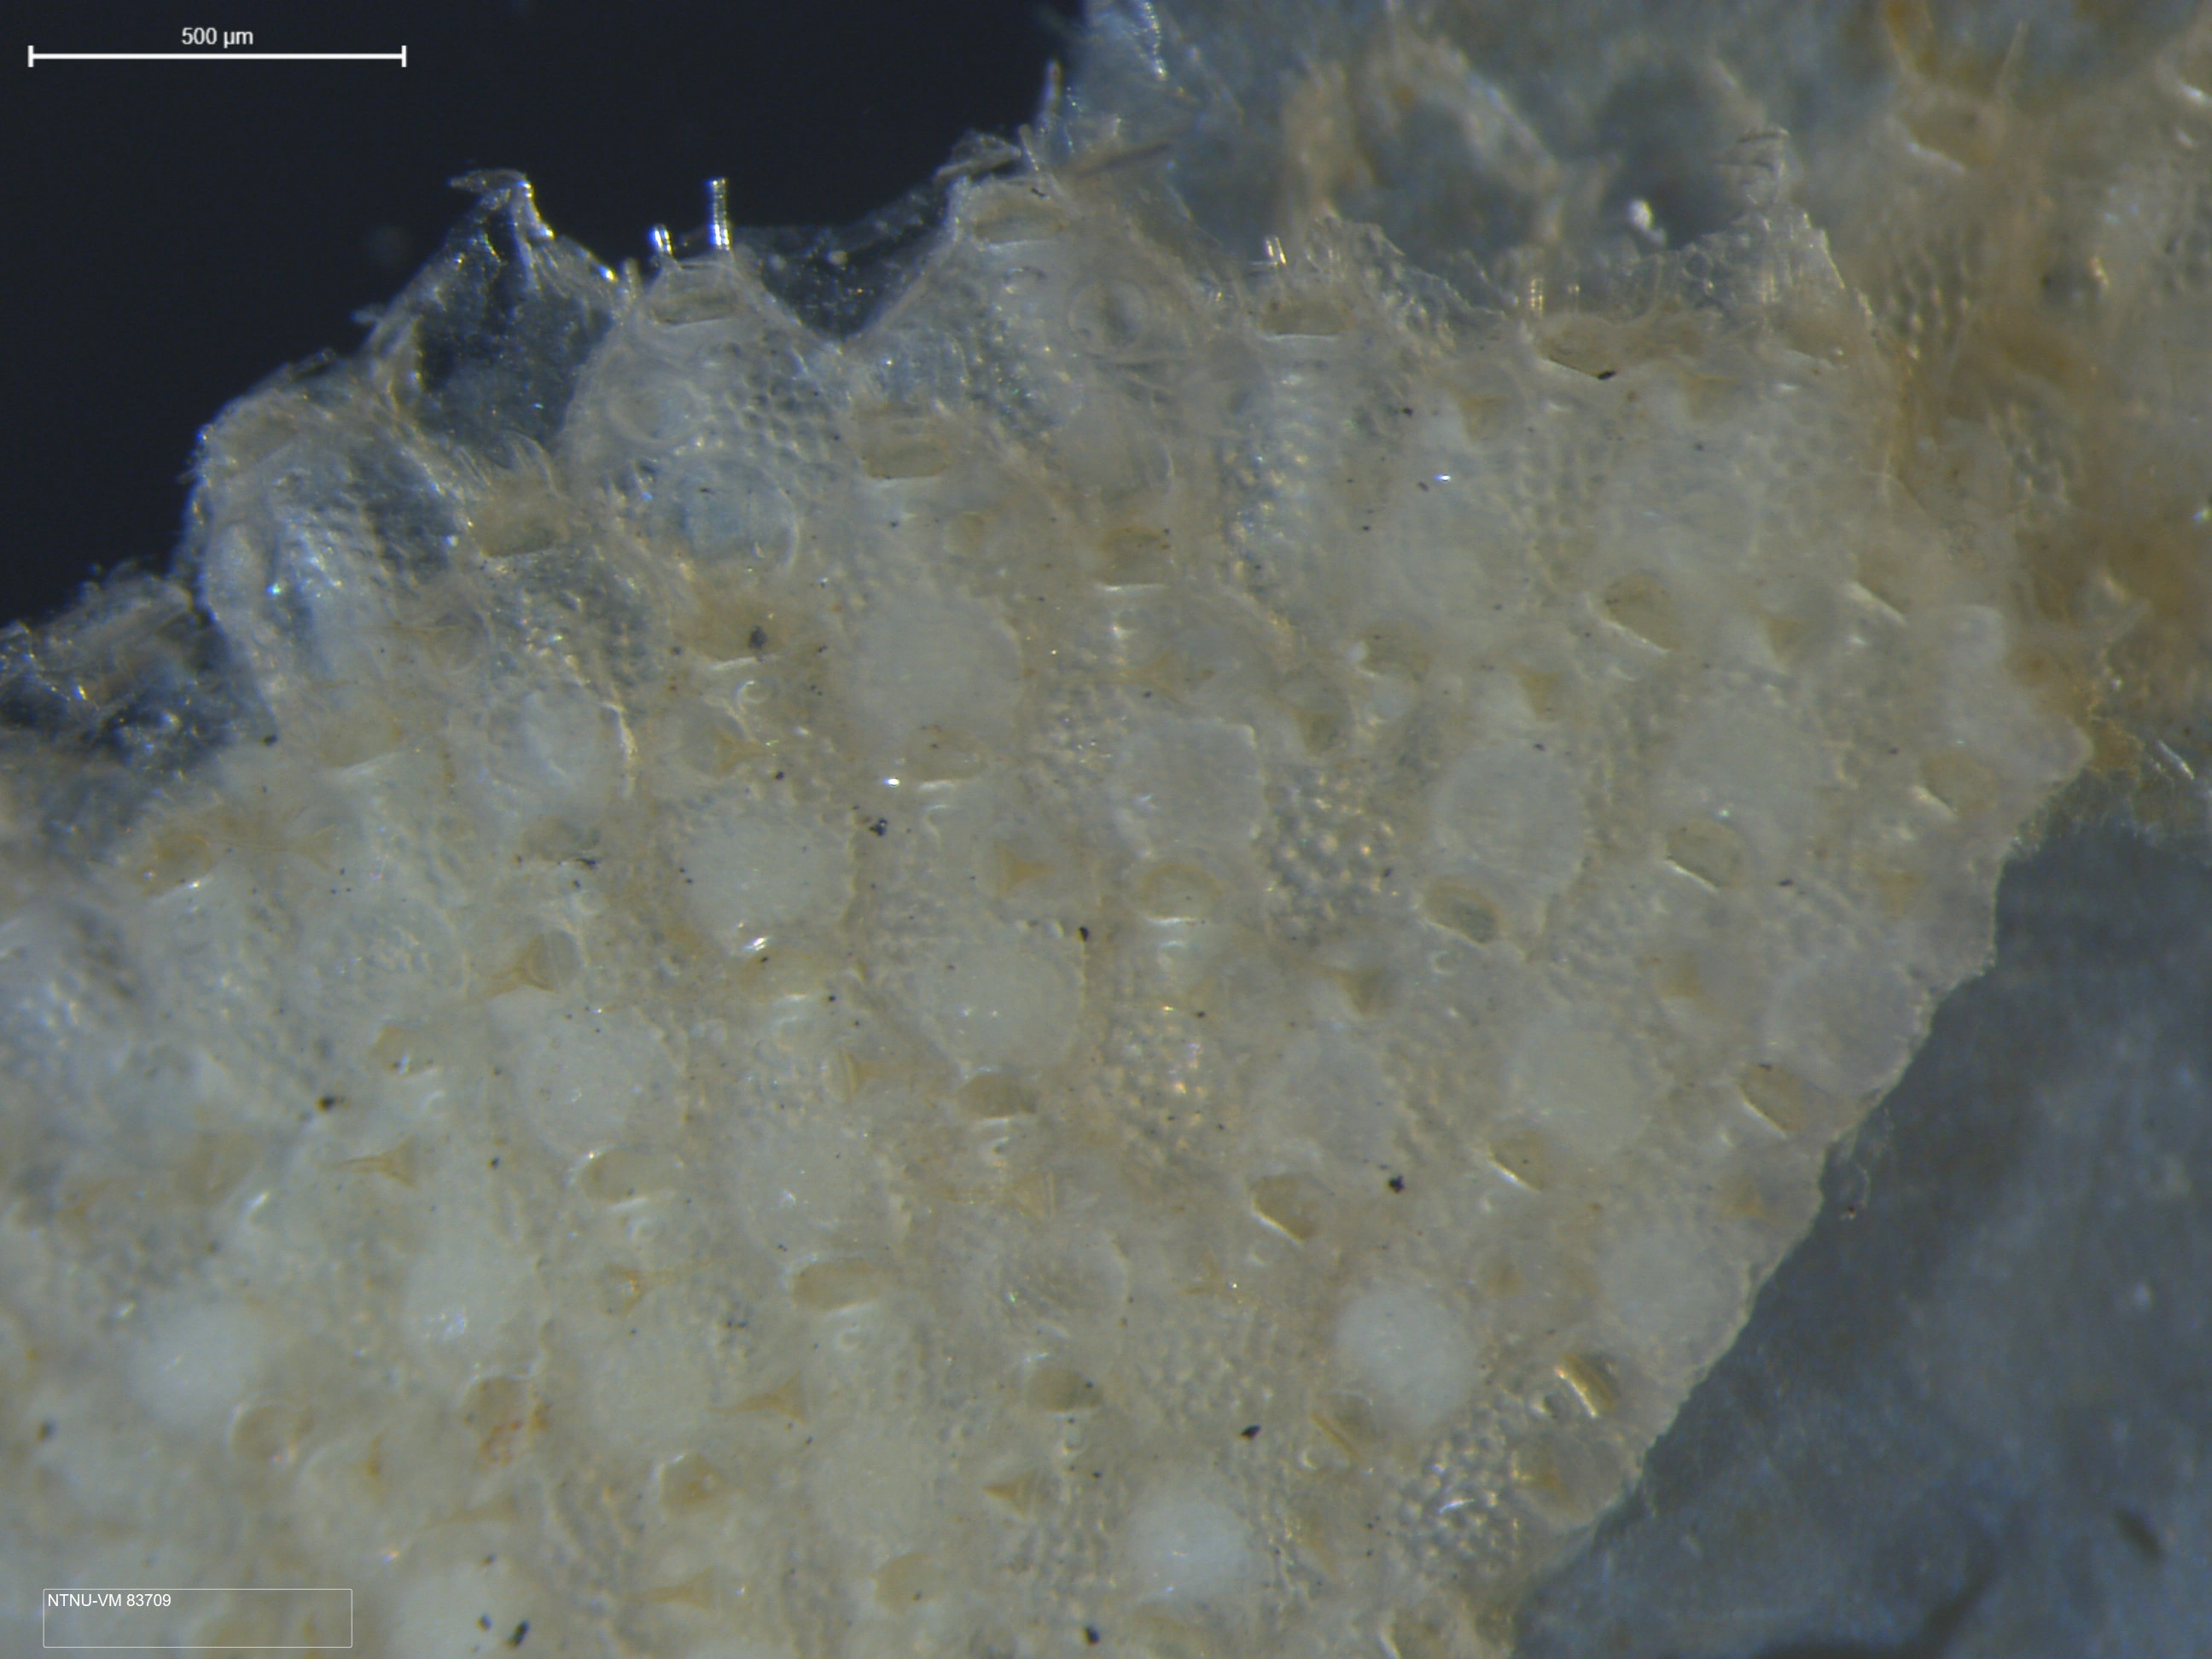 Mosdyr: Microporella ciliata.